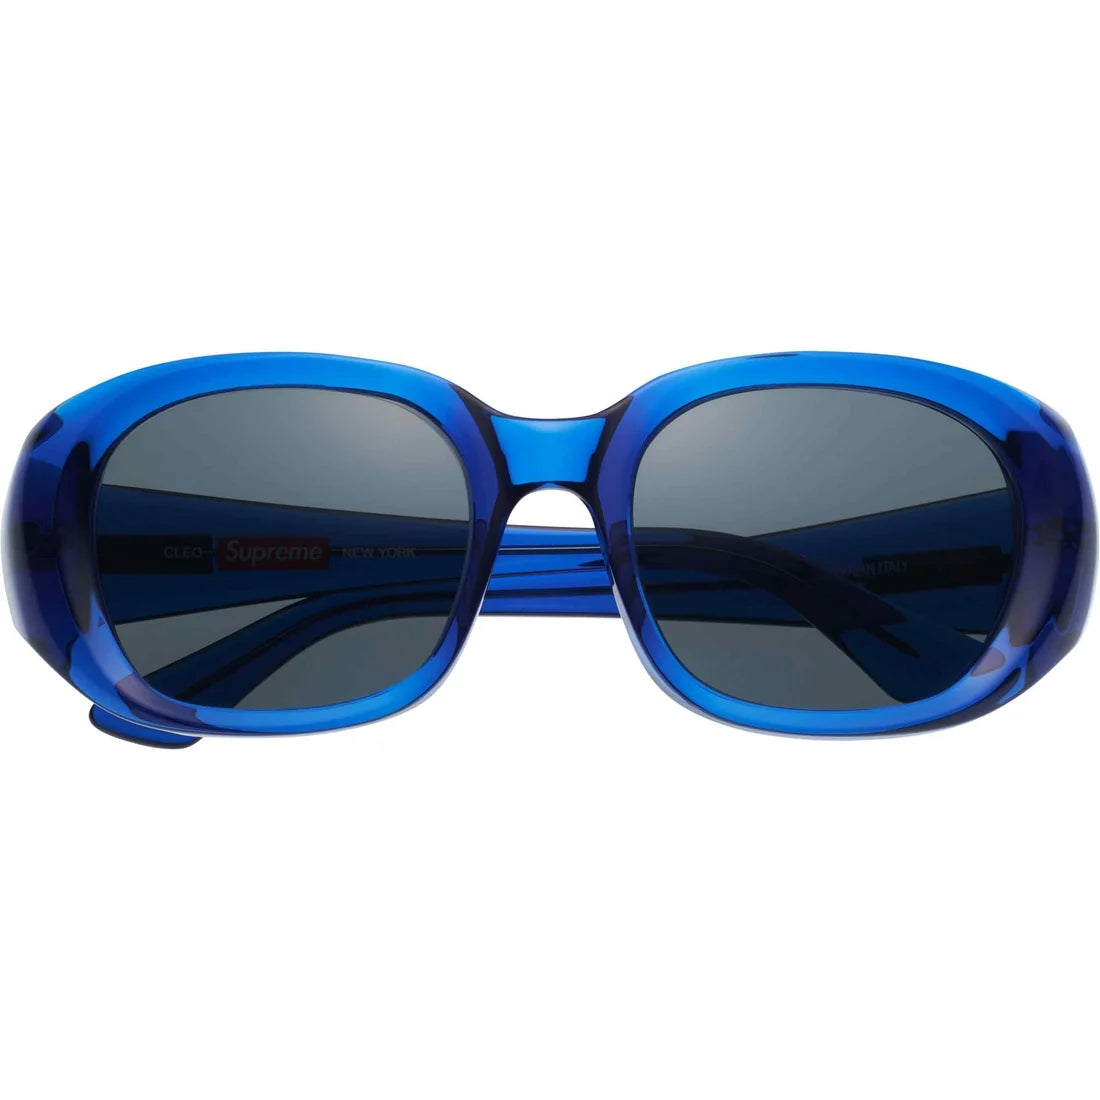 Supreme Cleo Sunglasses Blue